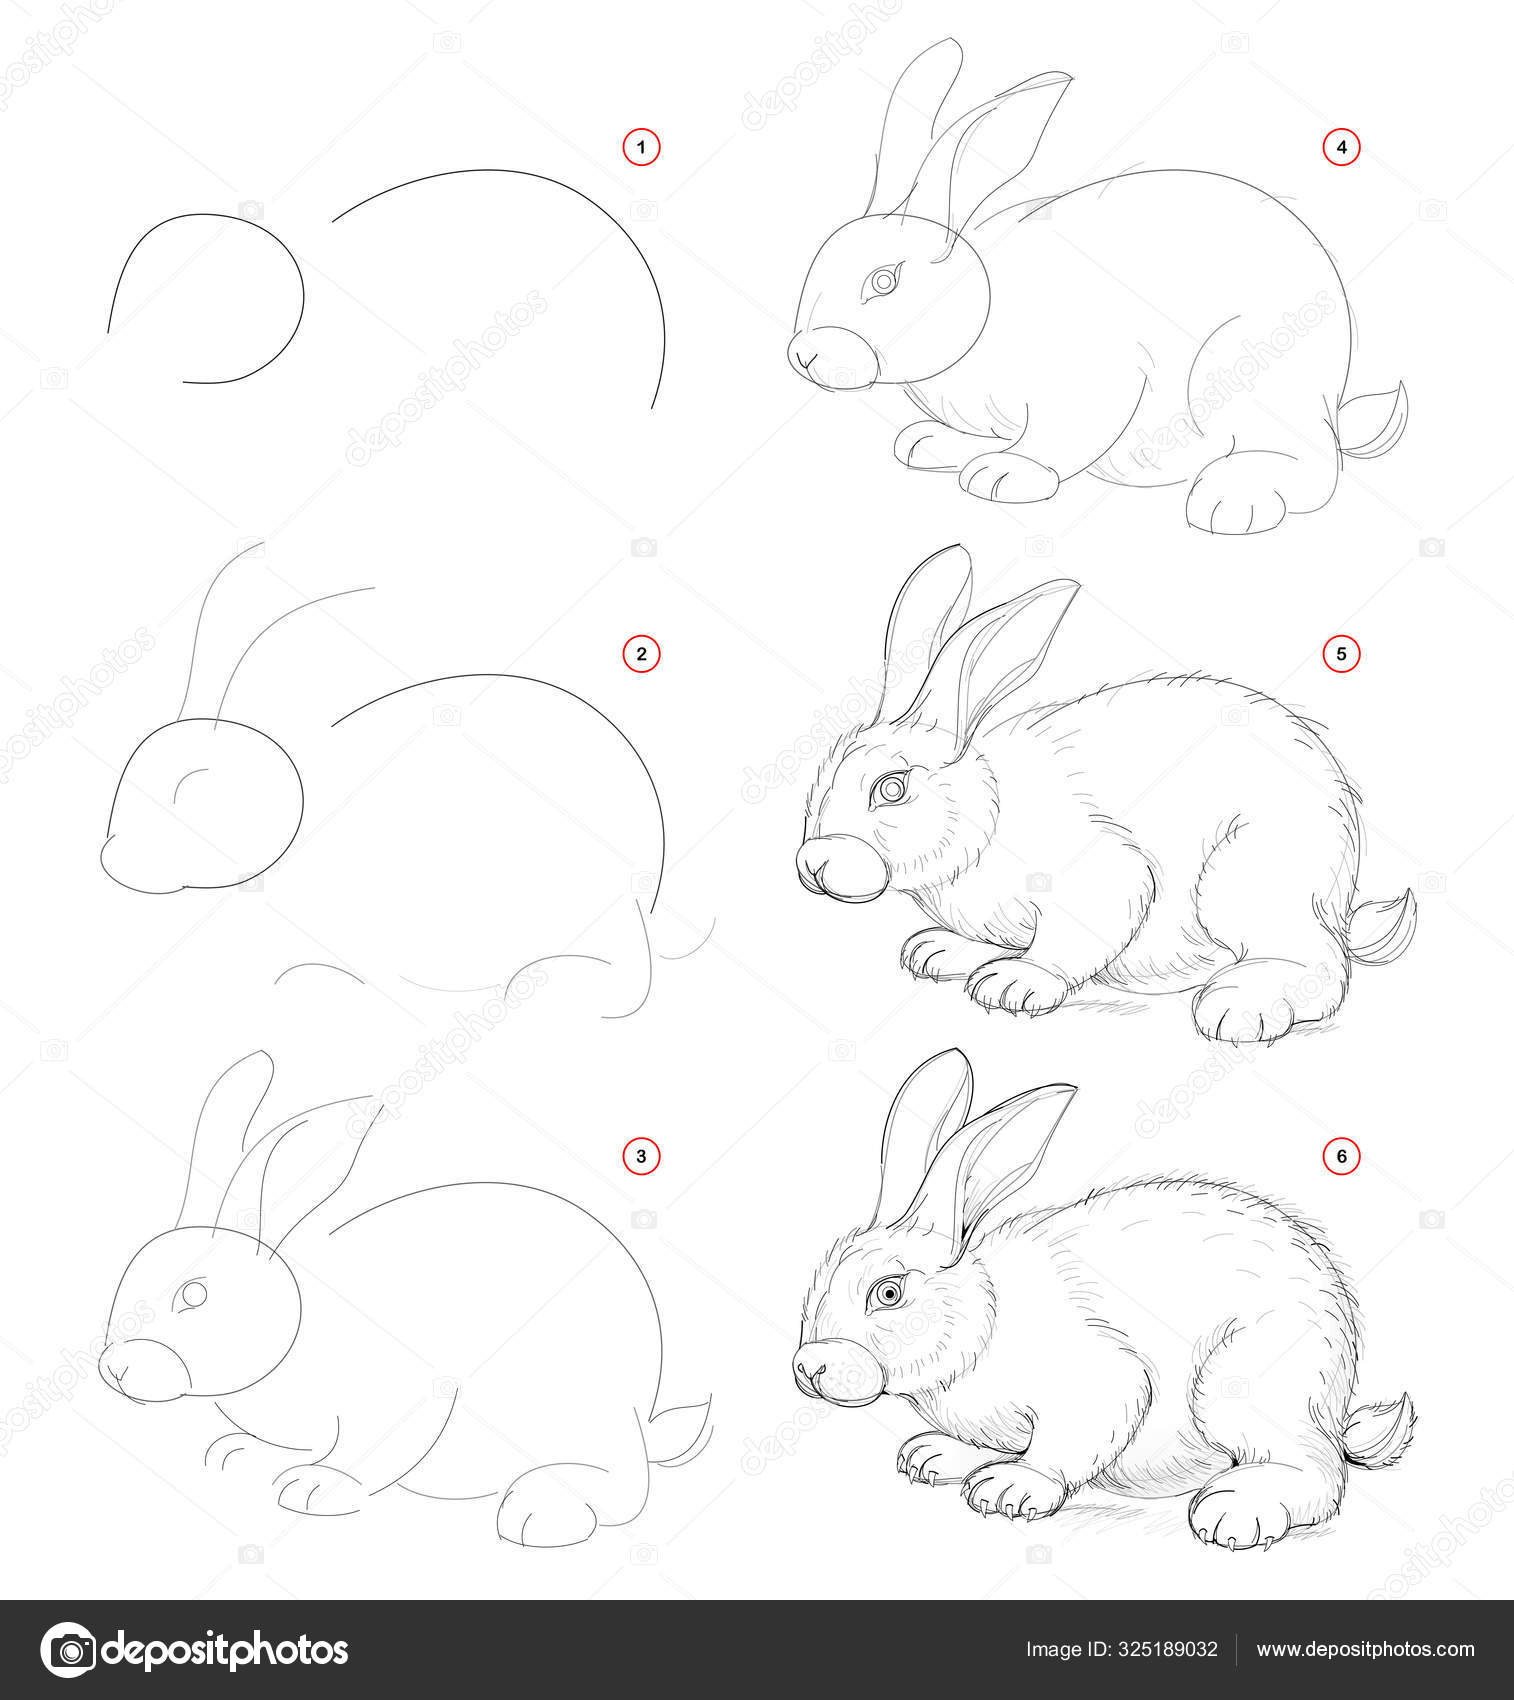 Как поэтапно рисовать зайца карандашом: Как нарисовать зайца карандашом